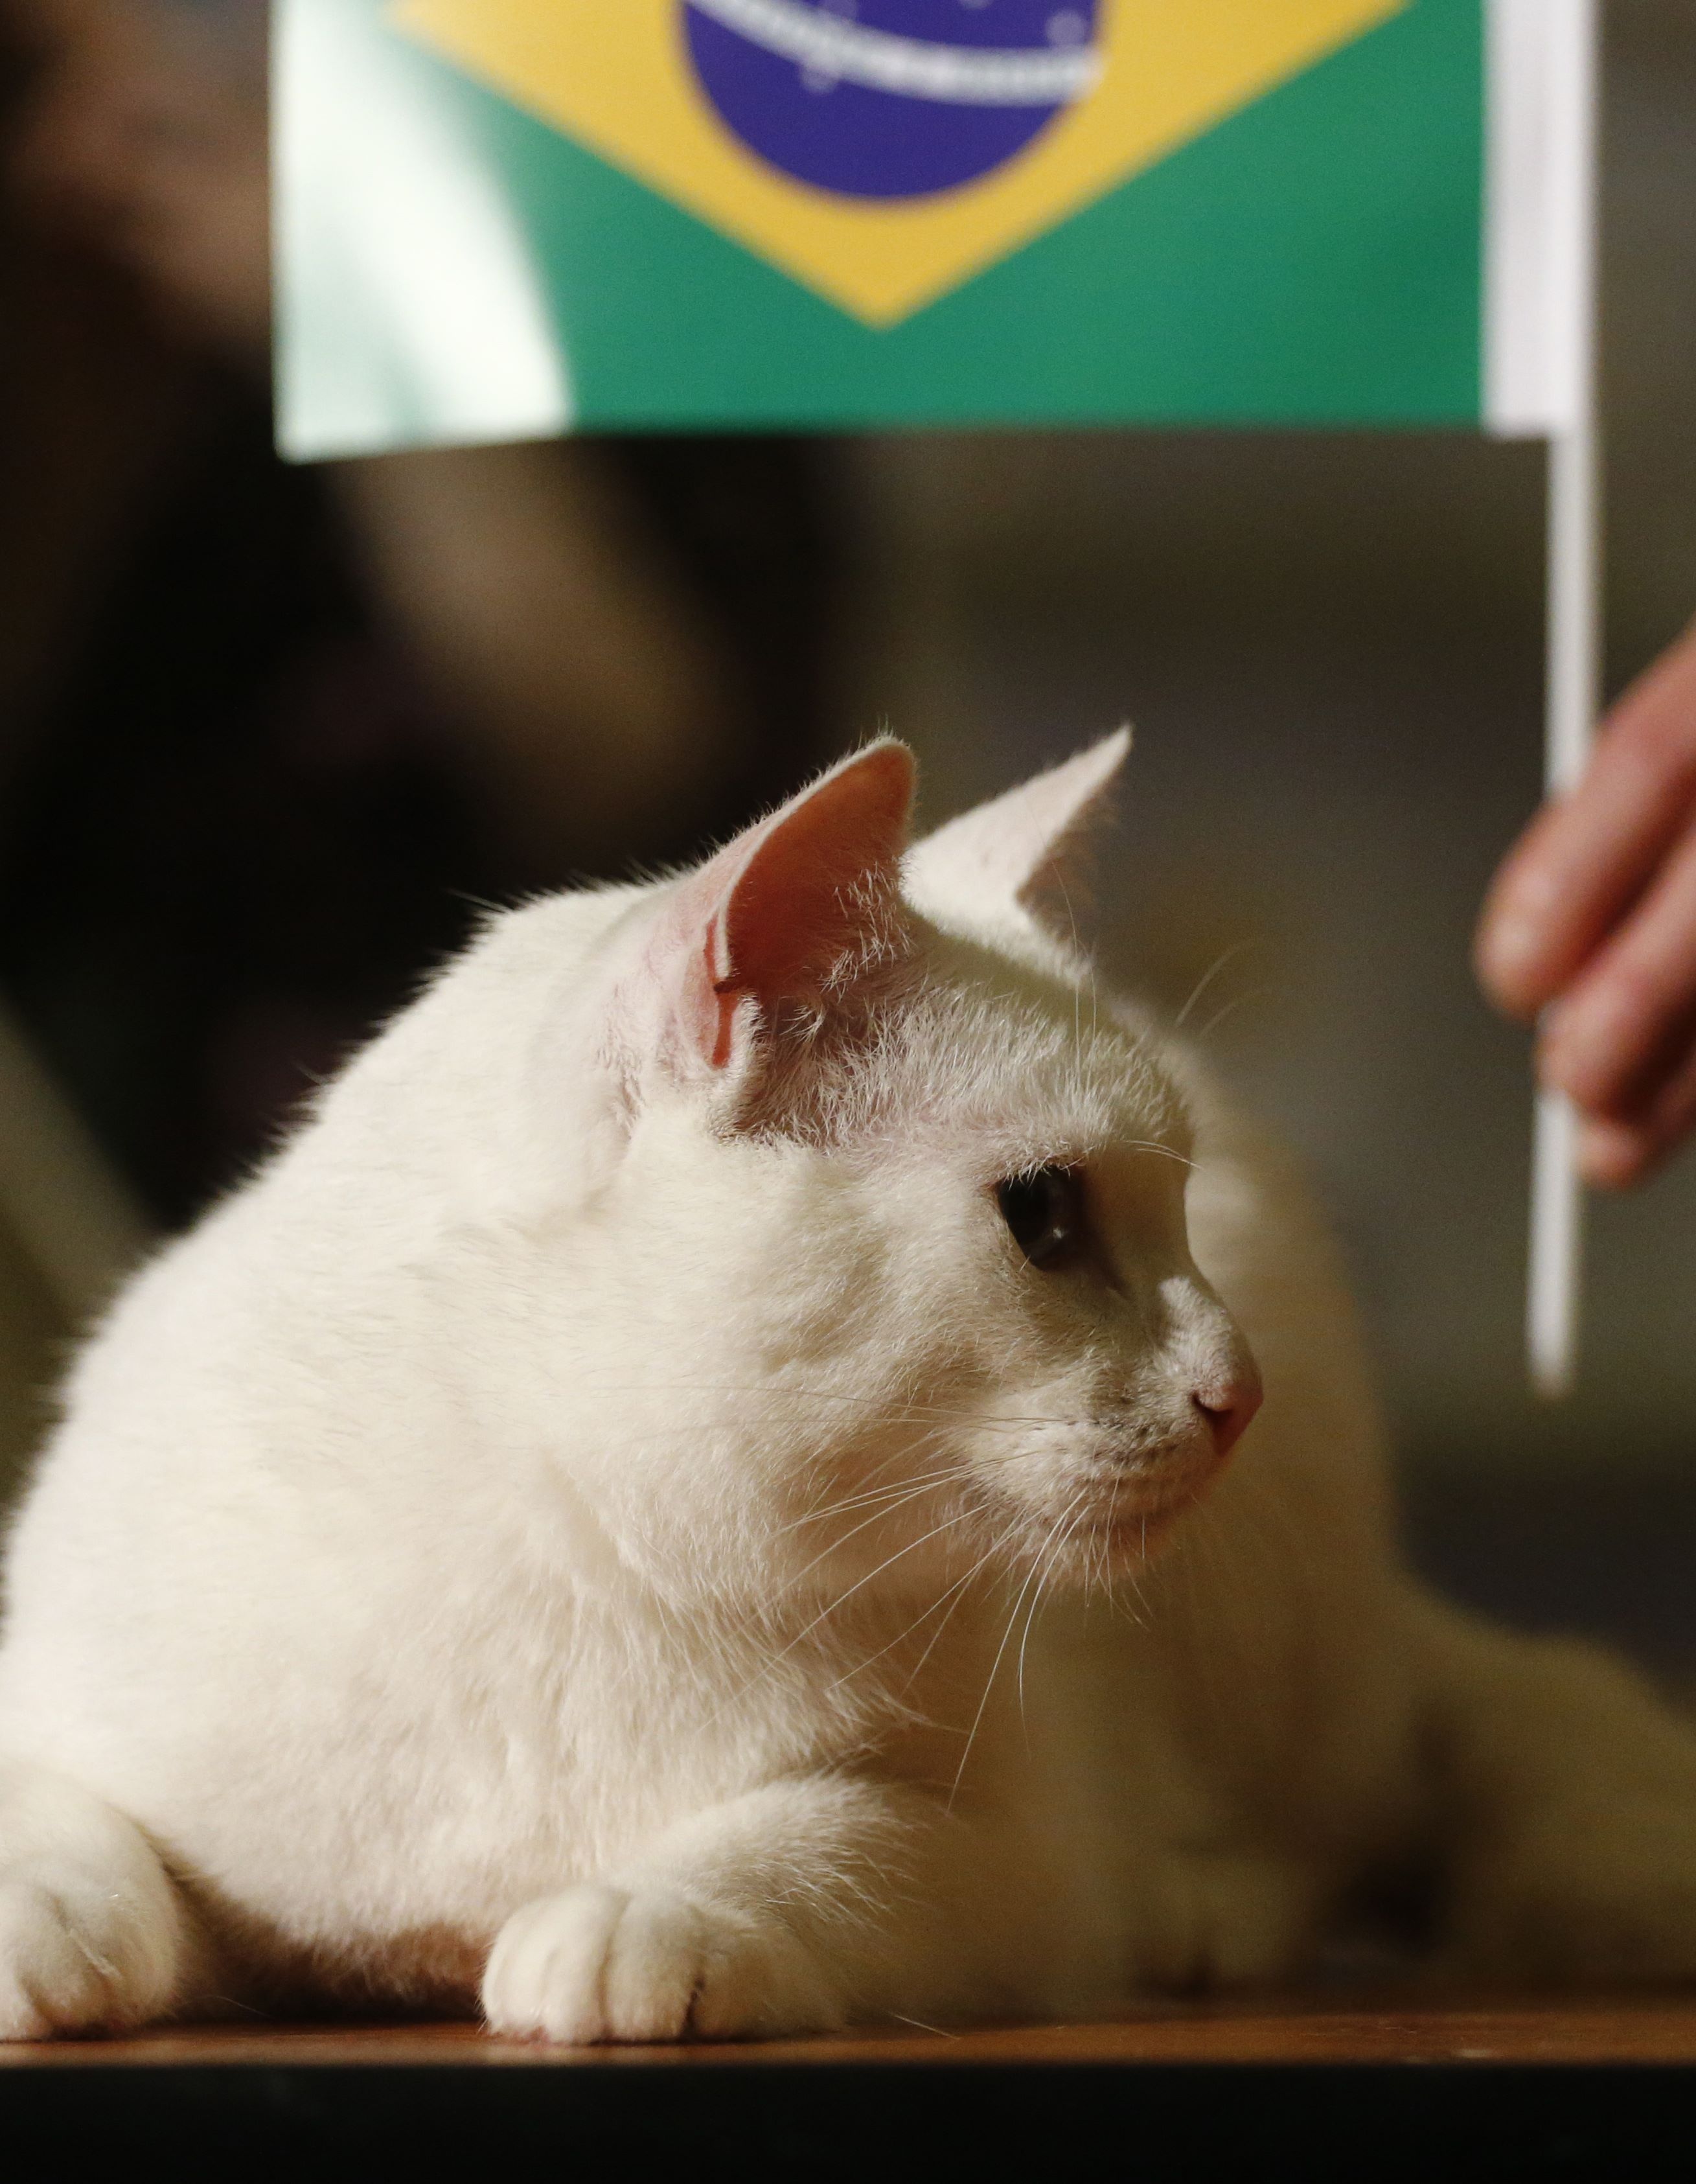 القط "أخيل" يتنبأ بفوز منتخب البرازيل أمام كوستاريكا